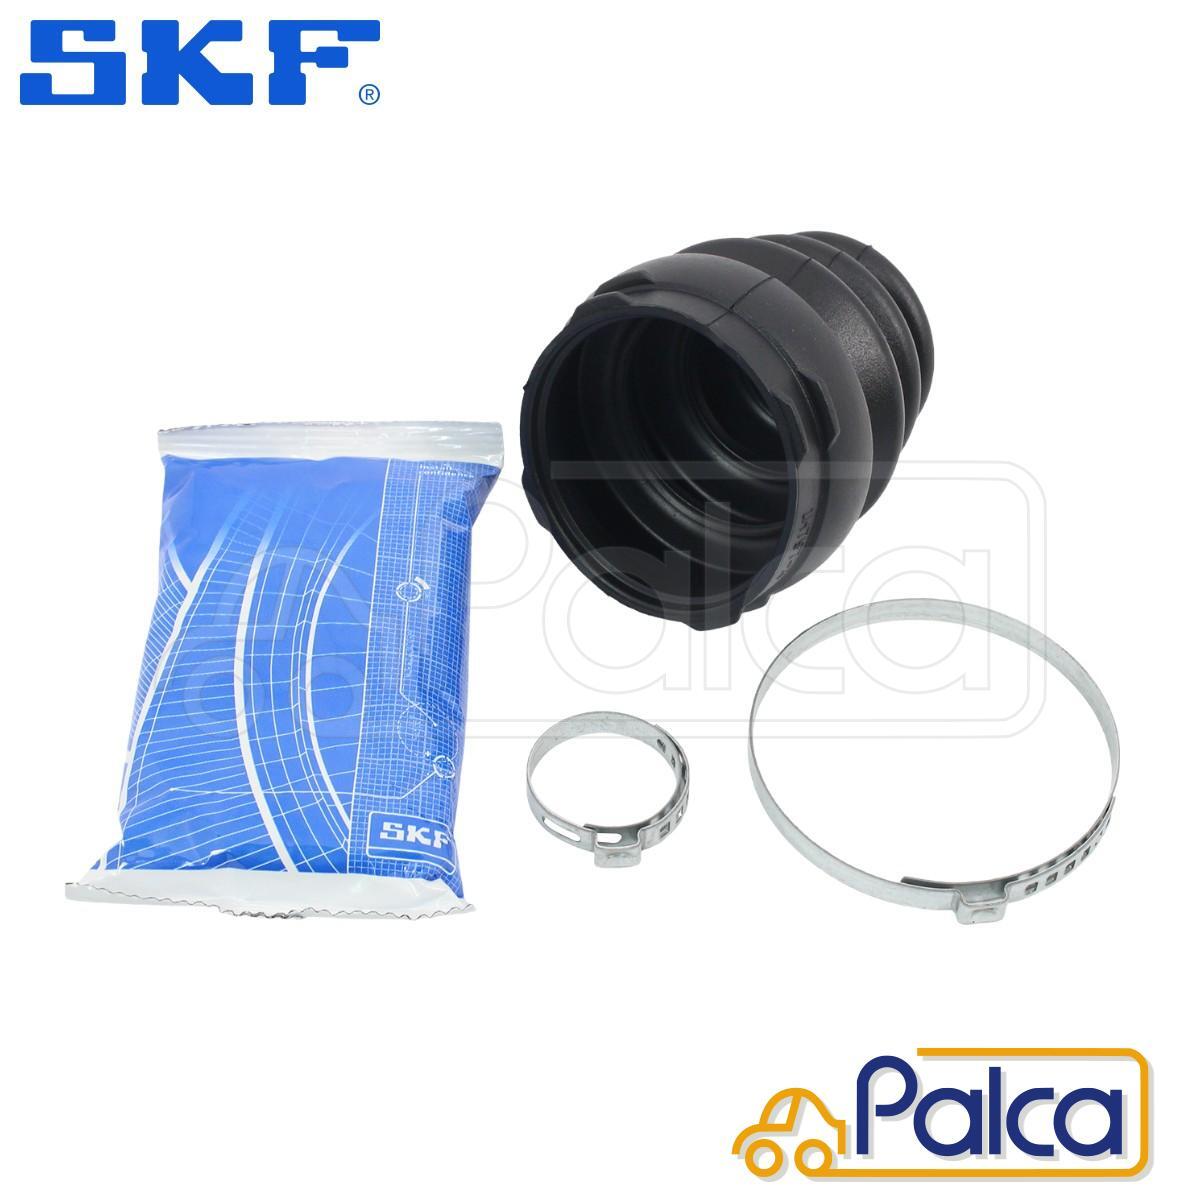  Fiat drive shaft boot kit inner Punto / Punto Evo / grande Punto /199 1.4 | Multipla | 500 500C/0.9 1.2 1.4